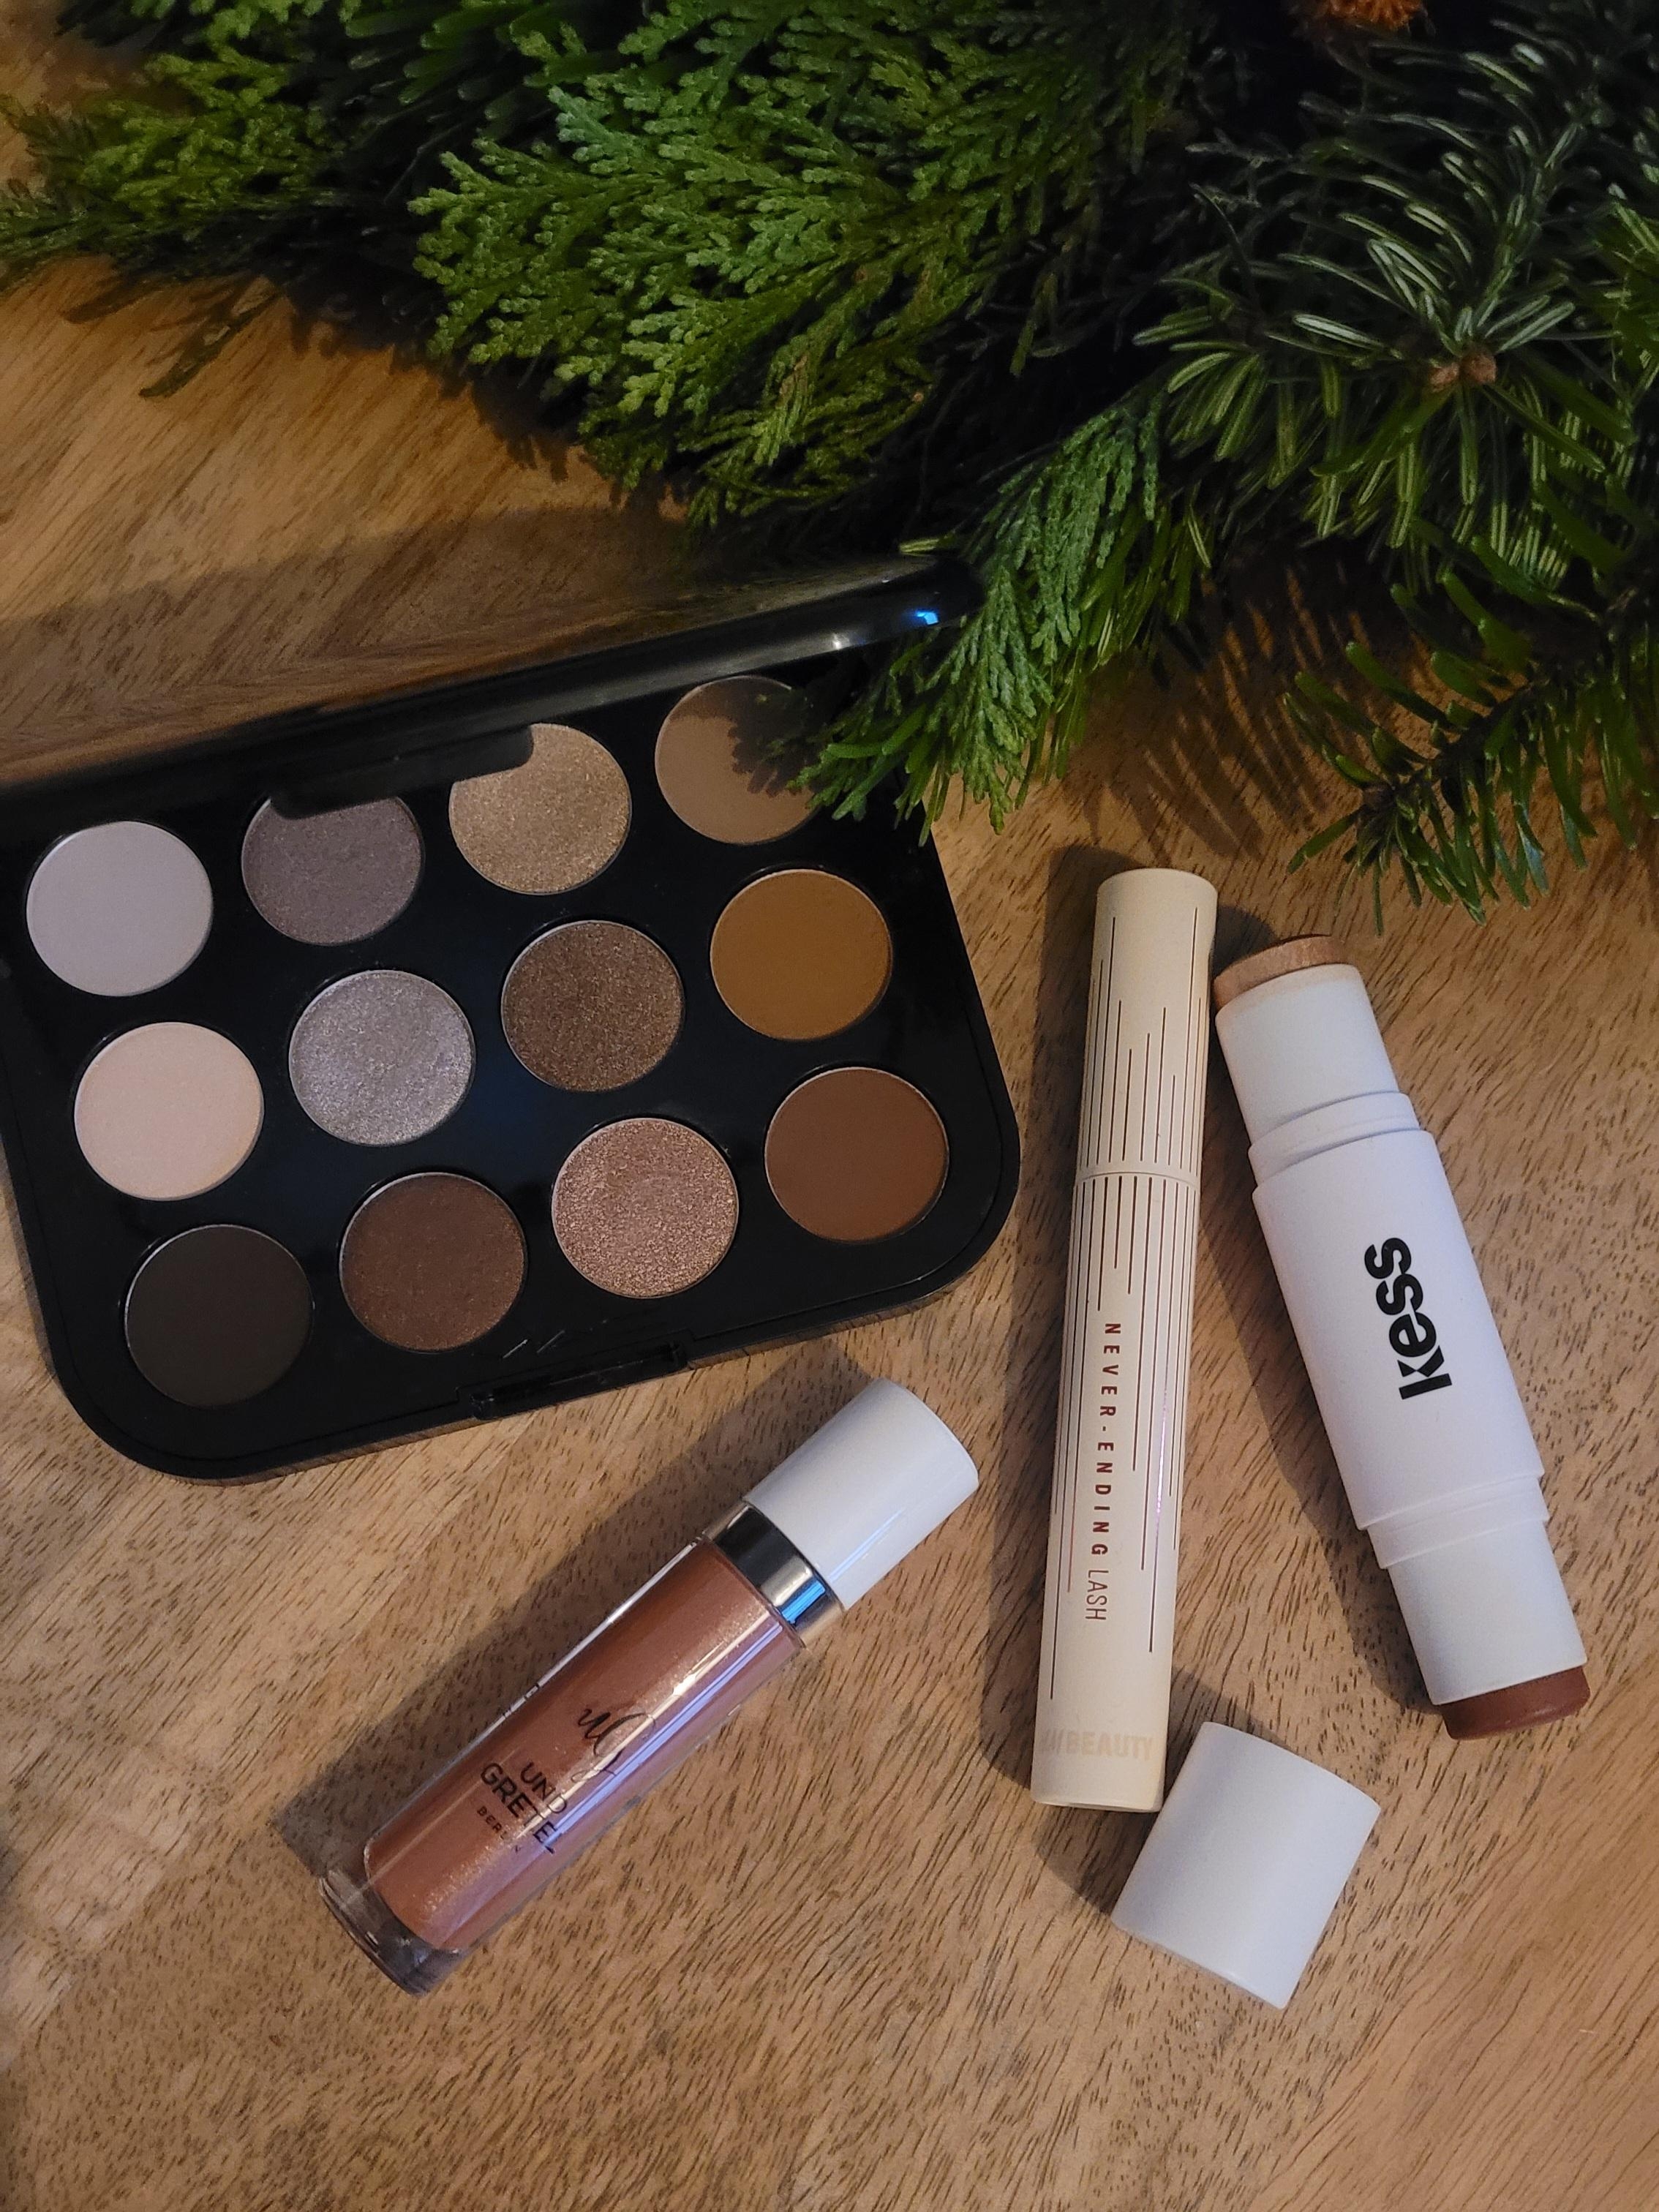 Perfekt vorbereitet für den 1. Advent 🌲
#beautyliebling #makeup #christmas